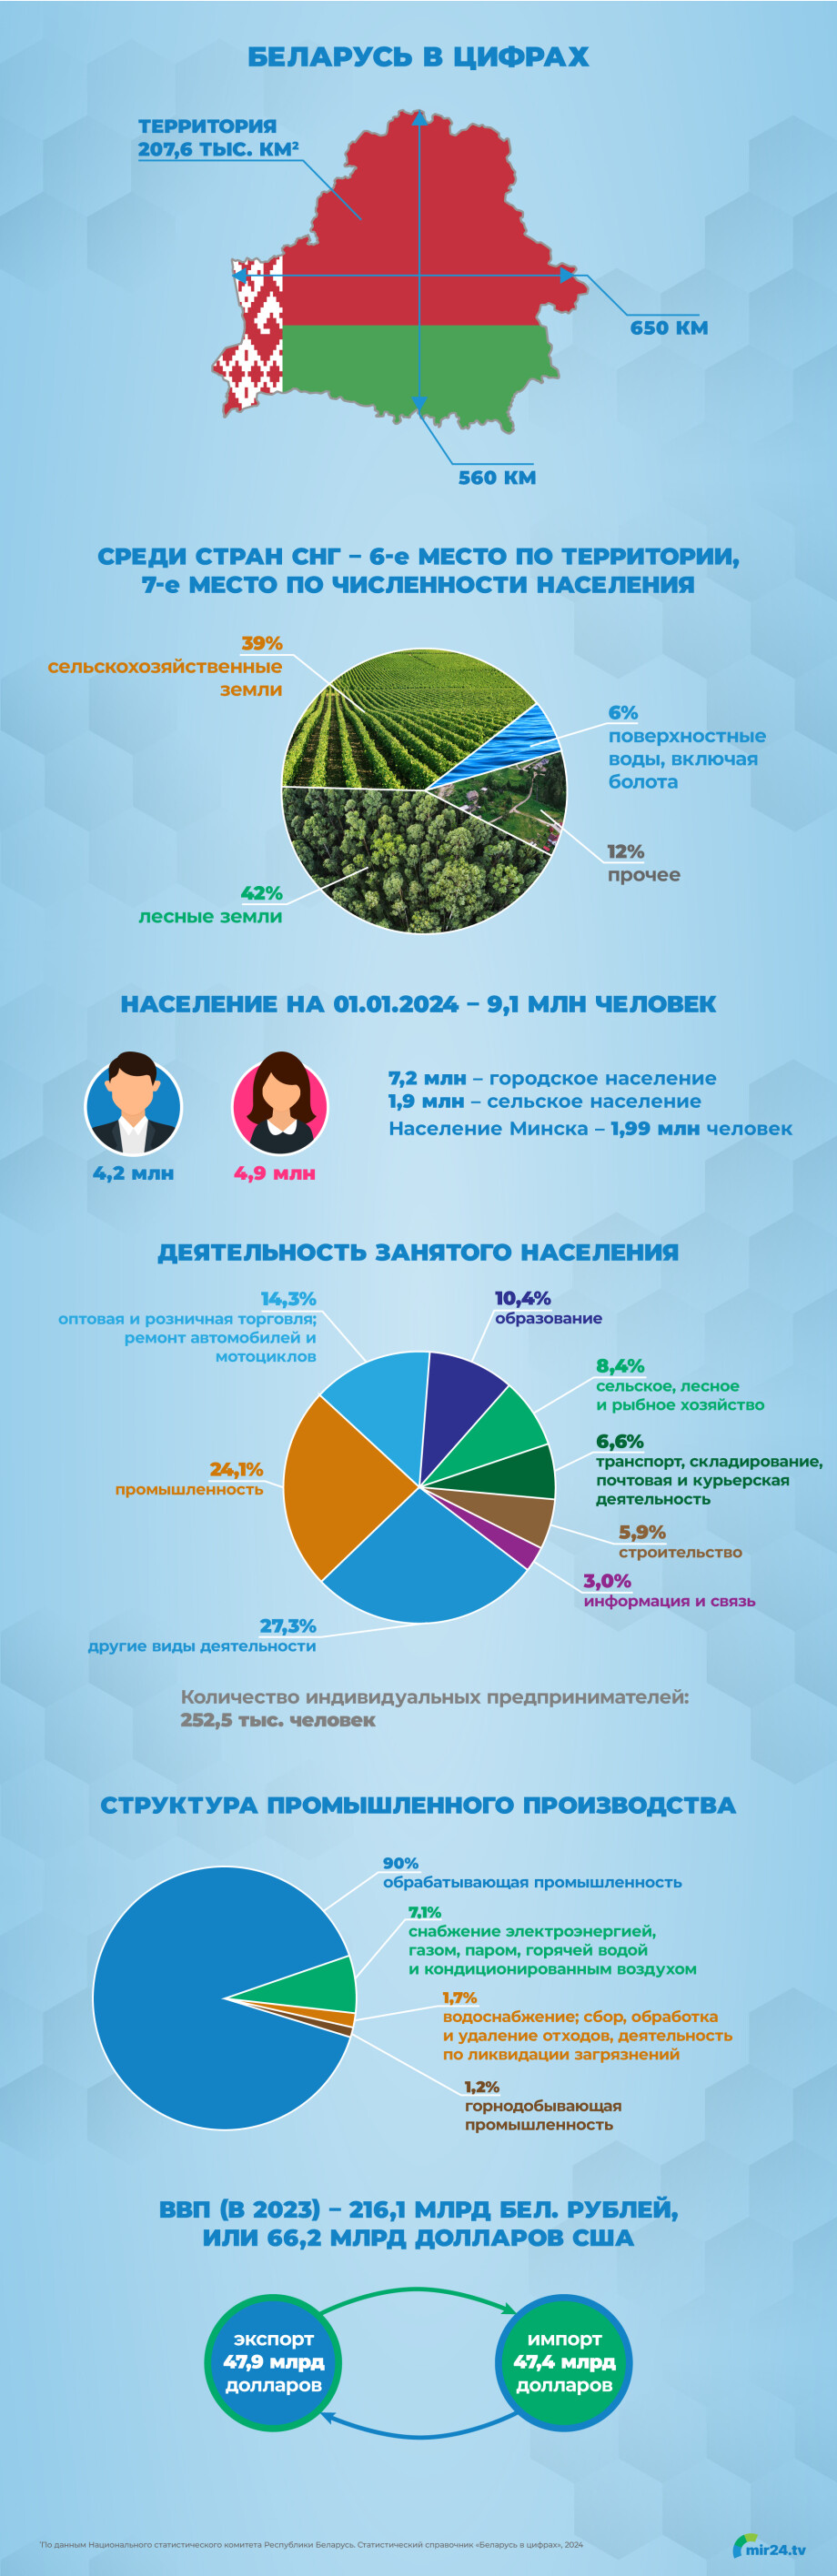 Беларусь в цифрах. Инфографика ко Дню Независимости республики